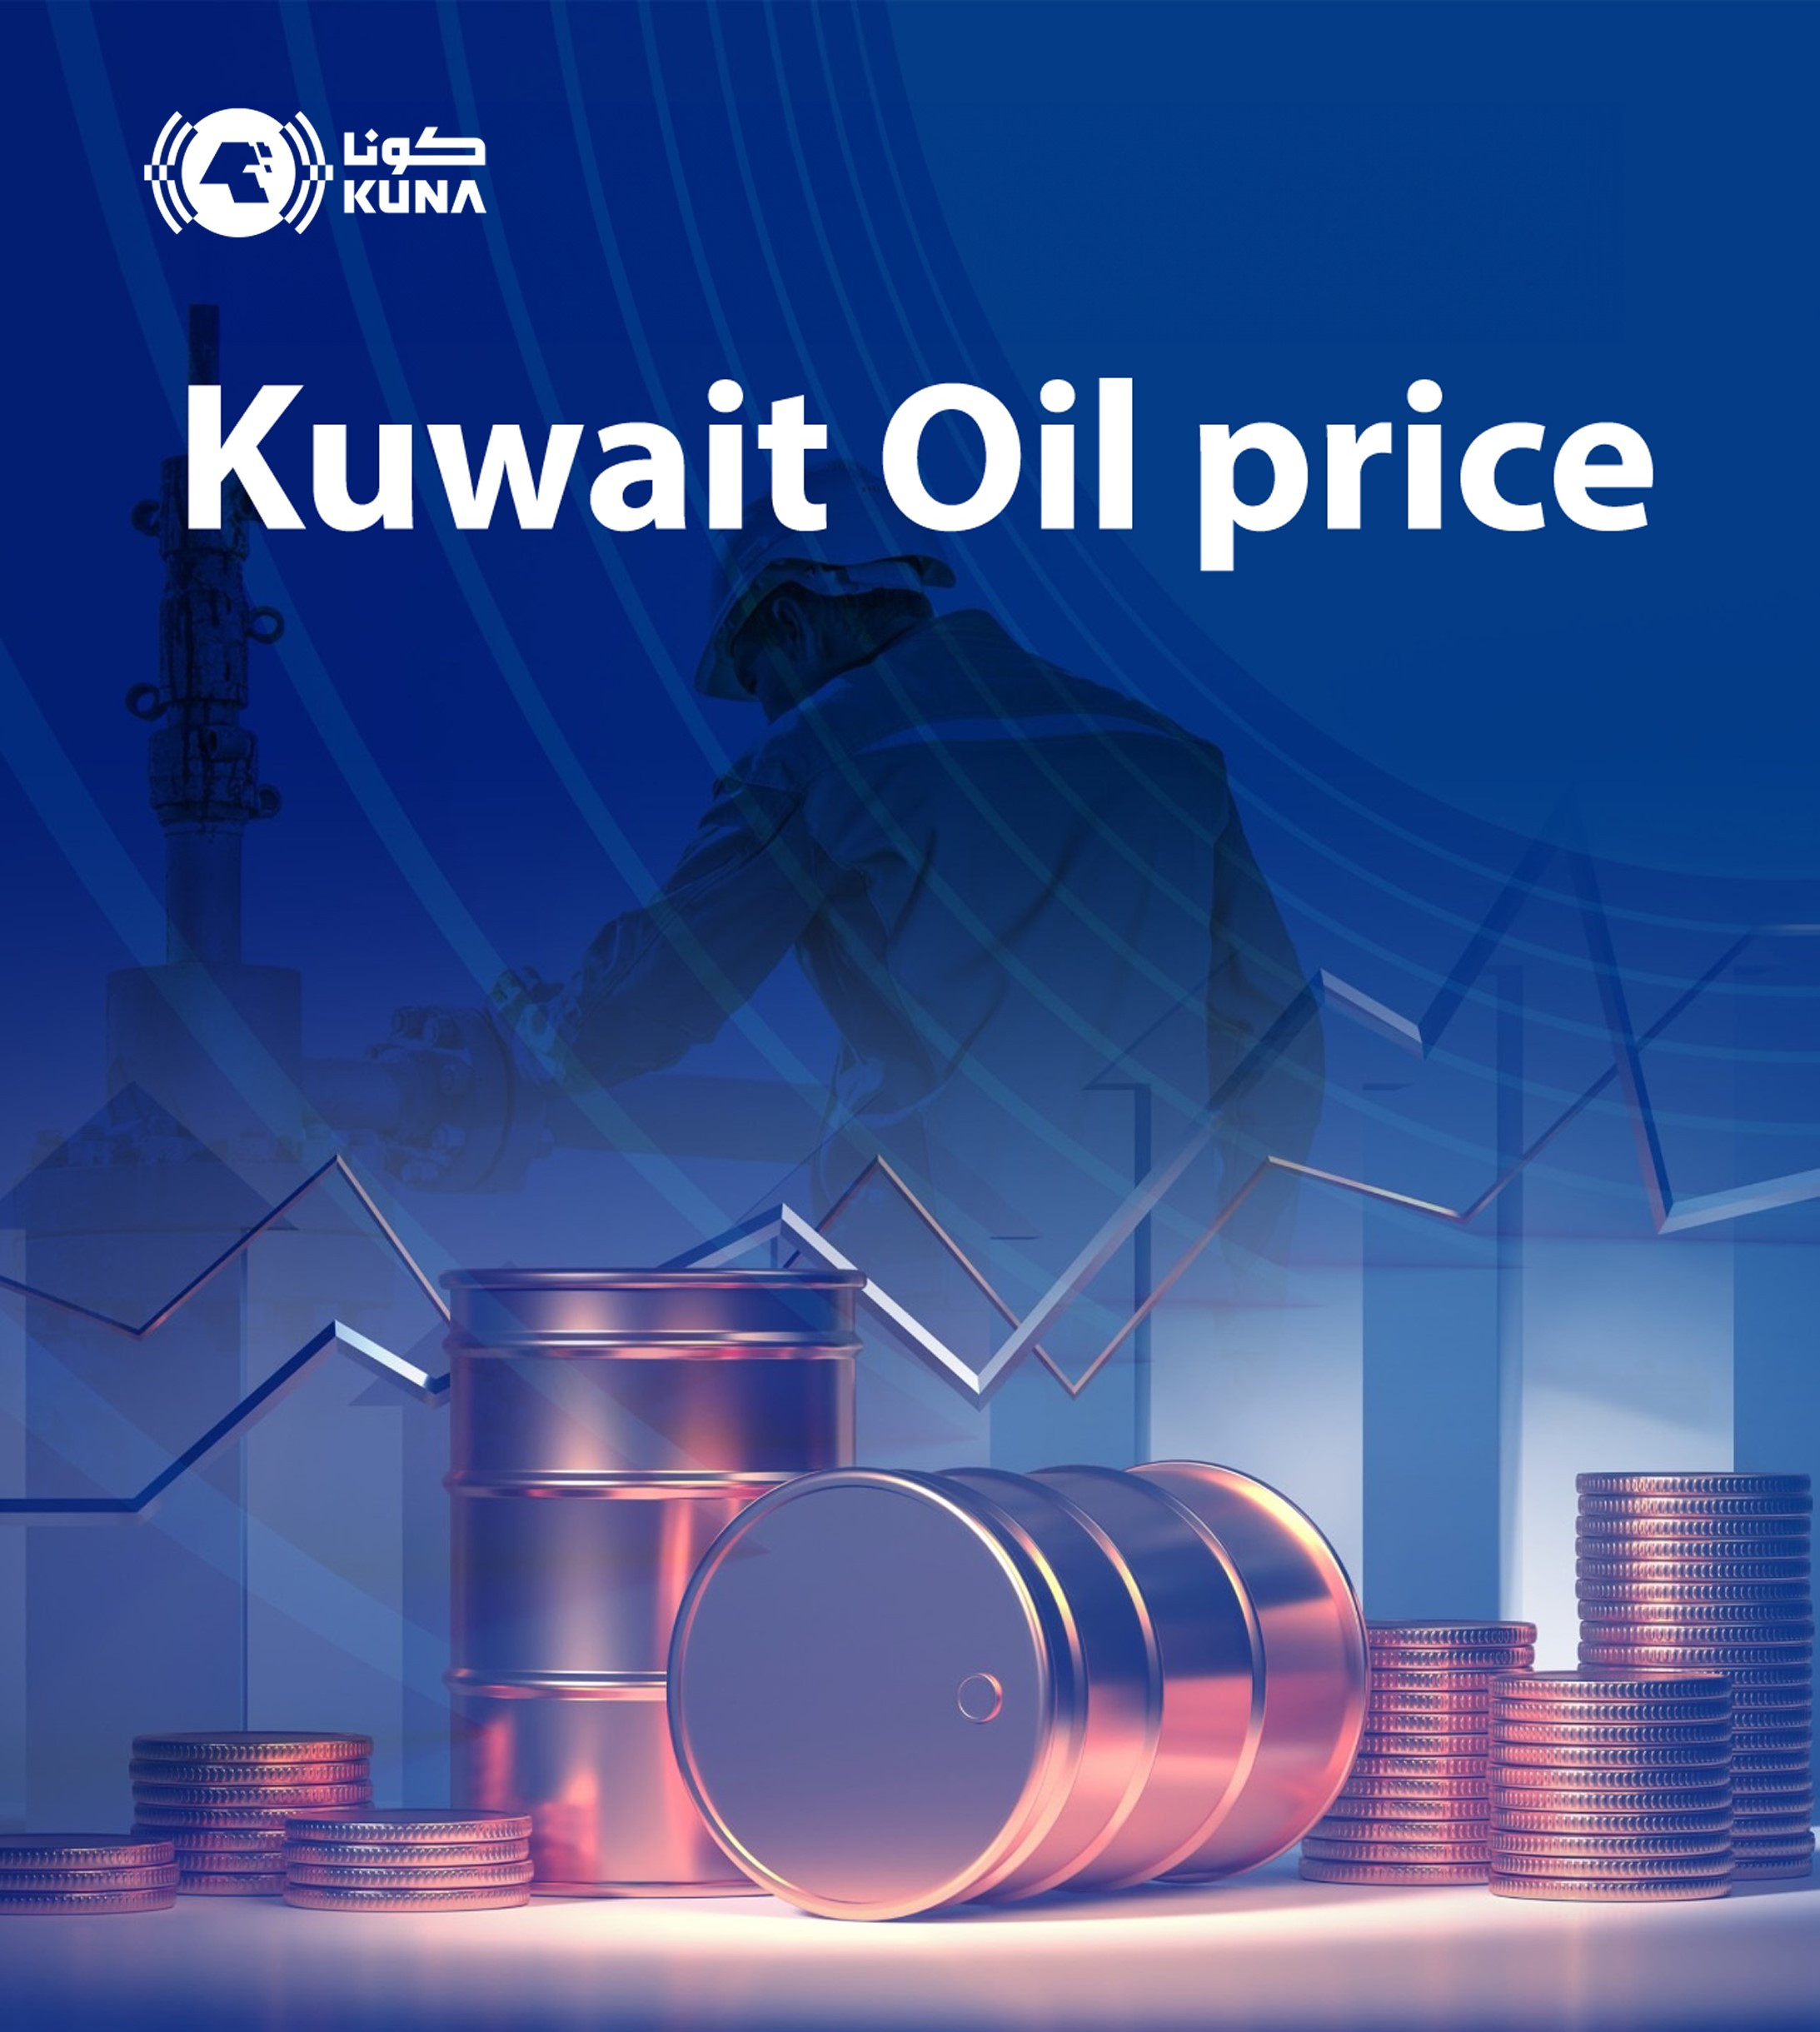 Kuwait oil price down to USD 89.63 pb - KPC                                                                                                                                                                                                               